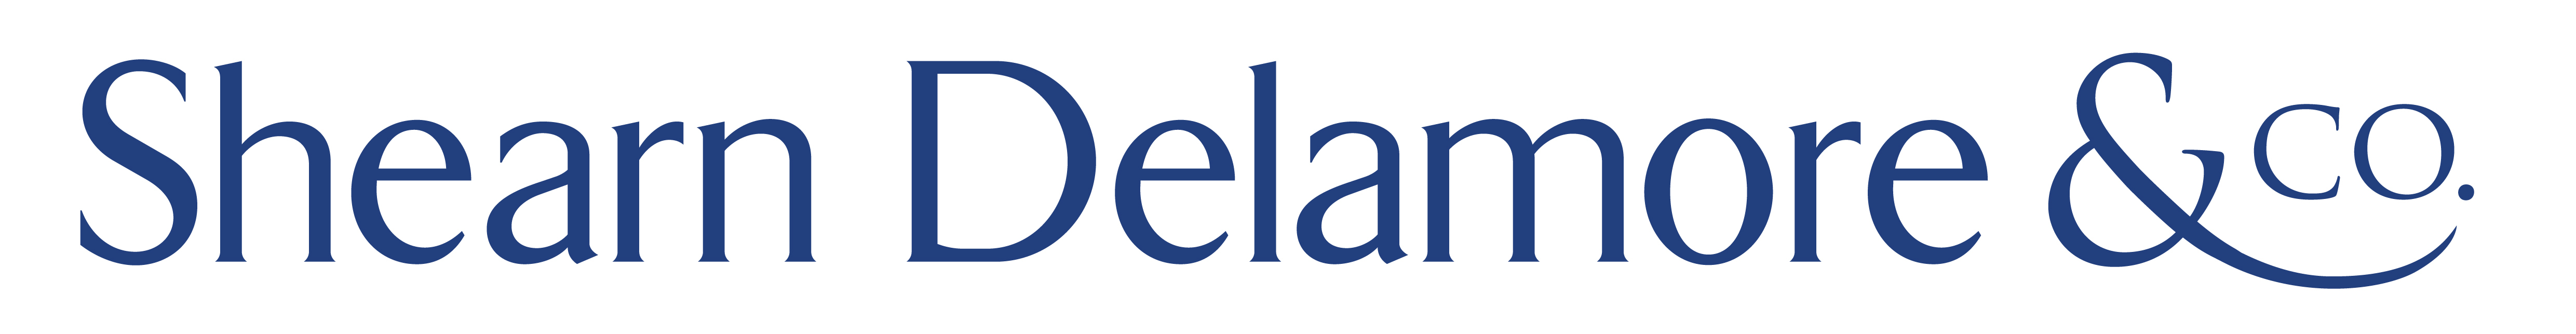 Shearn Delamore  logo